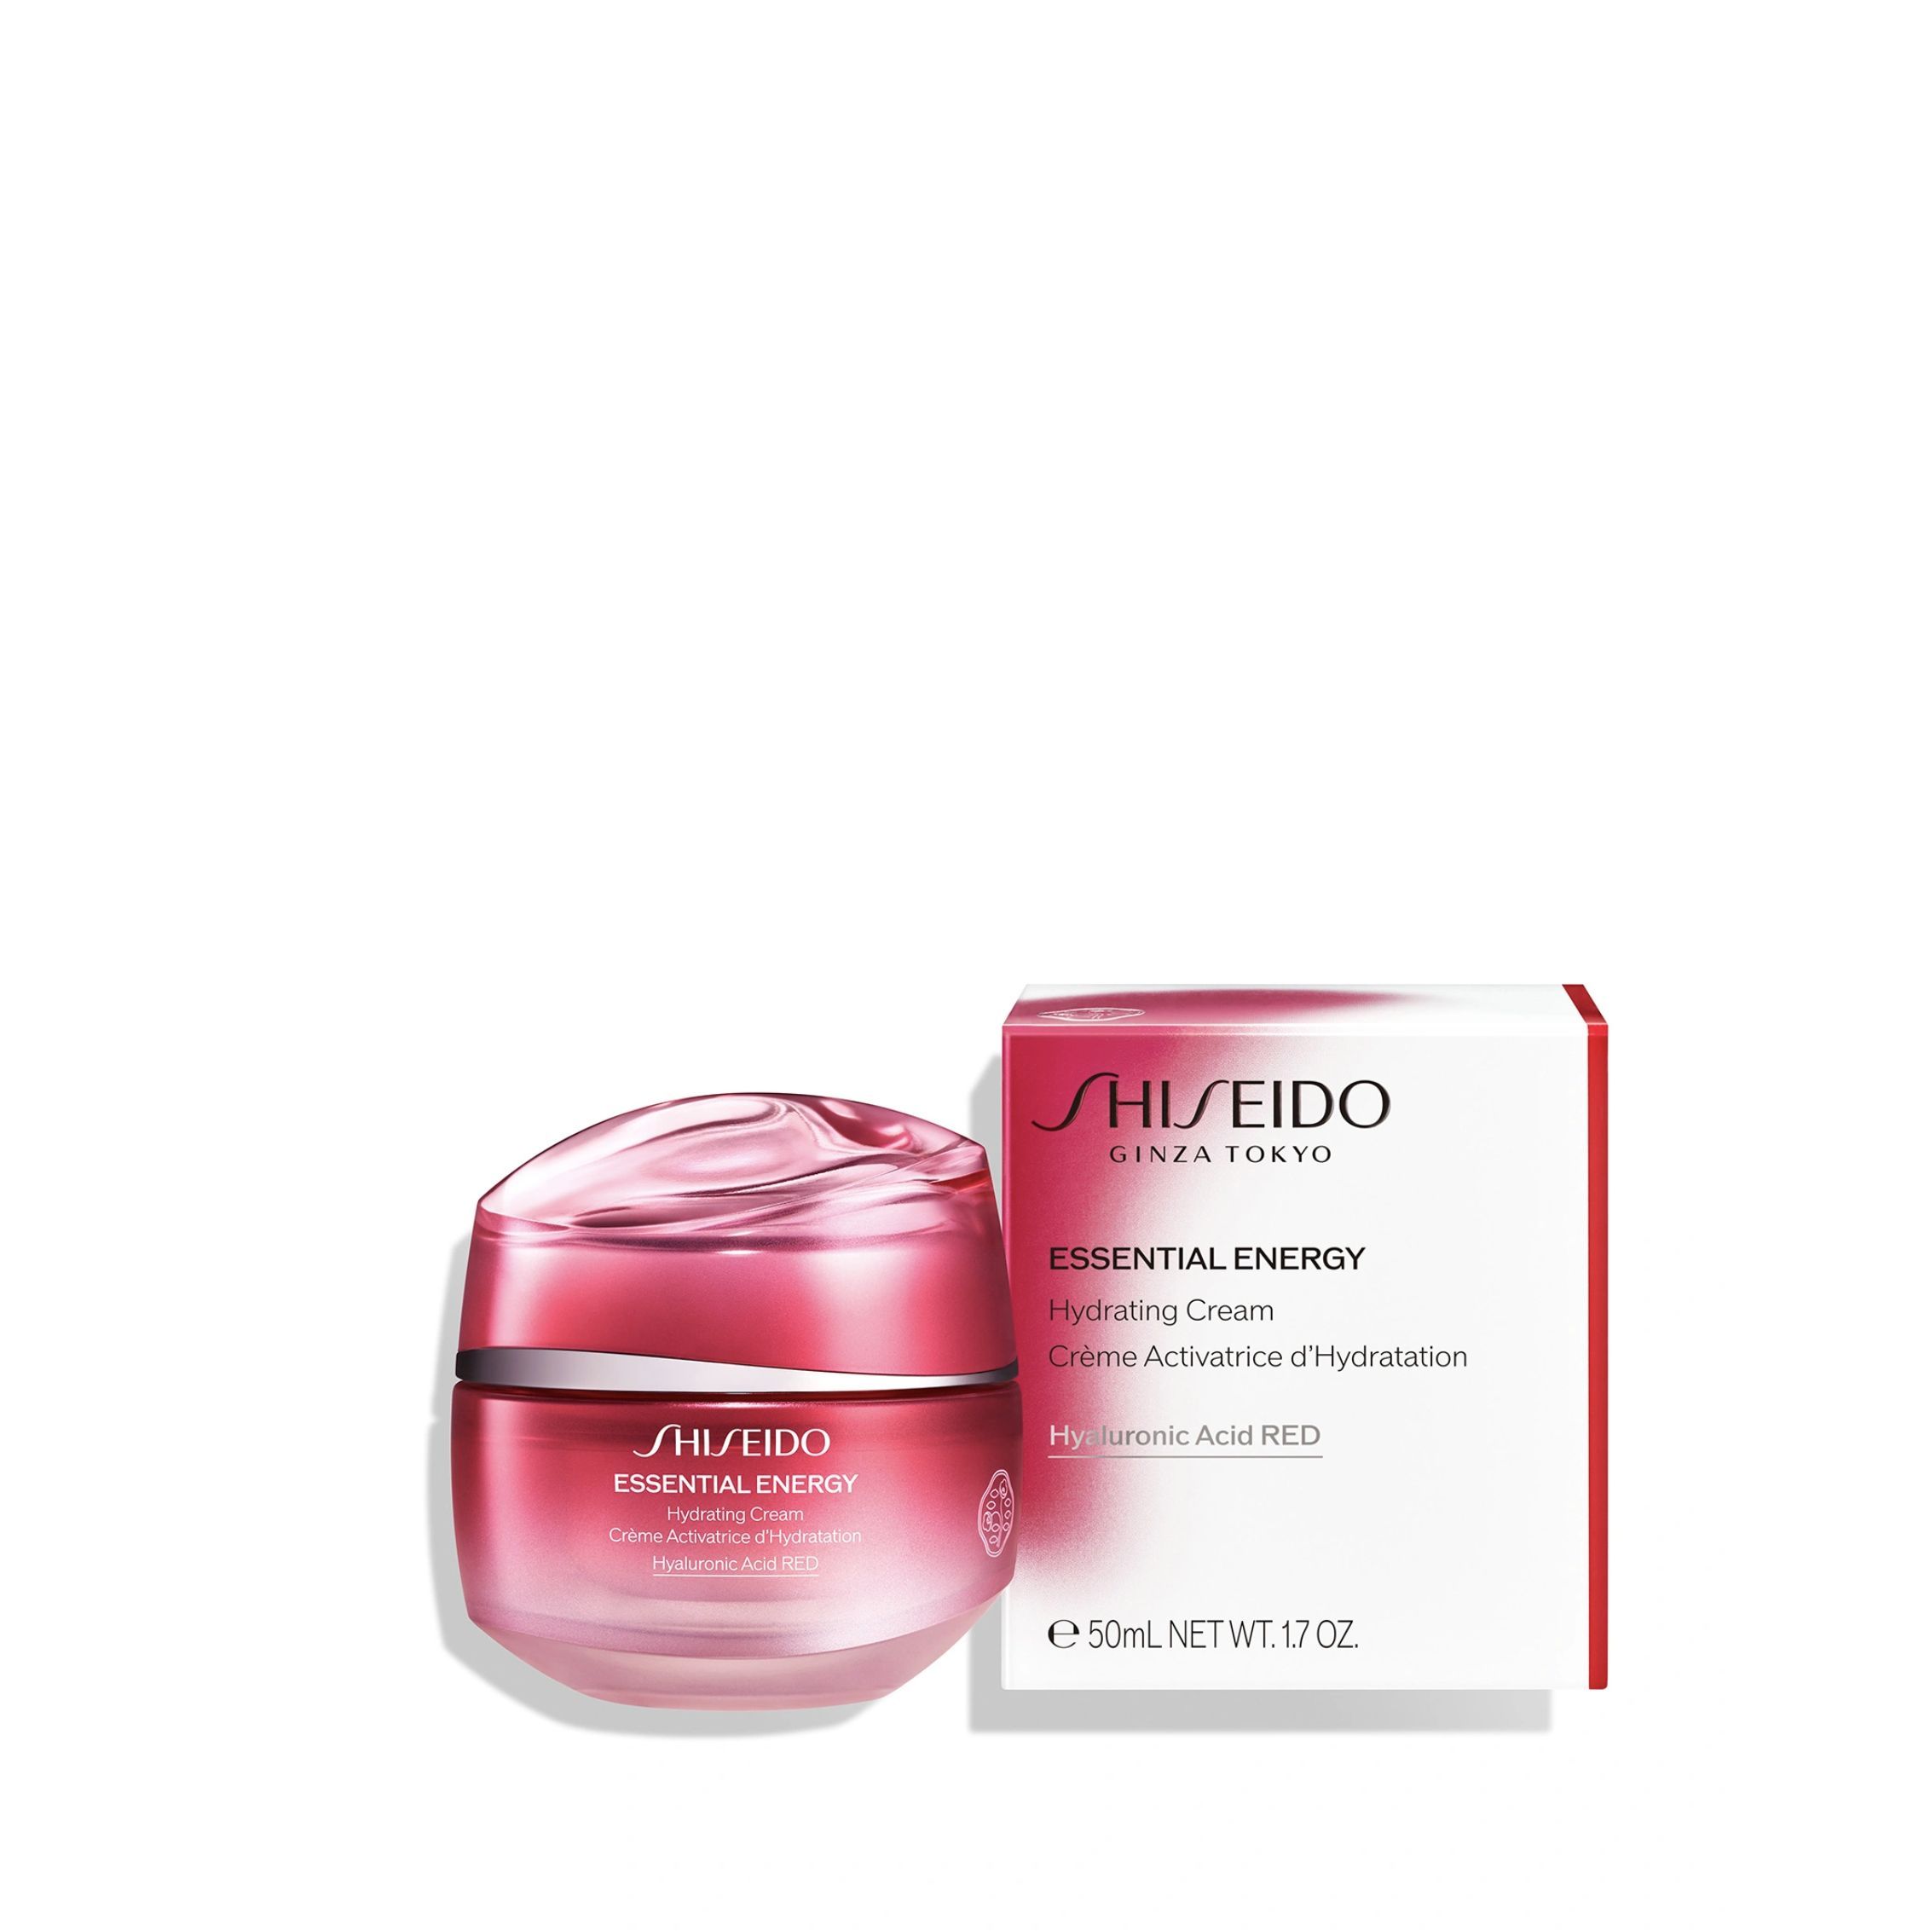 Perfect Nail Essence Shiseido. Shiseido essential energy